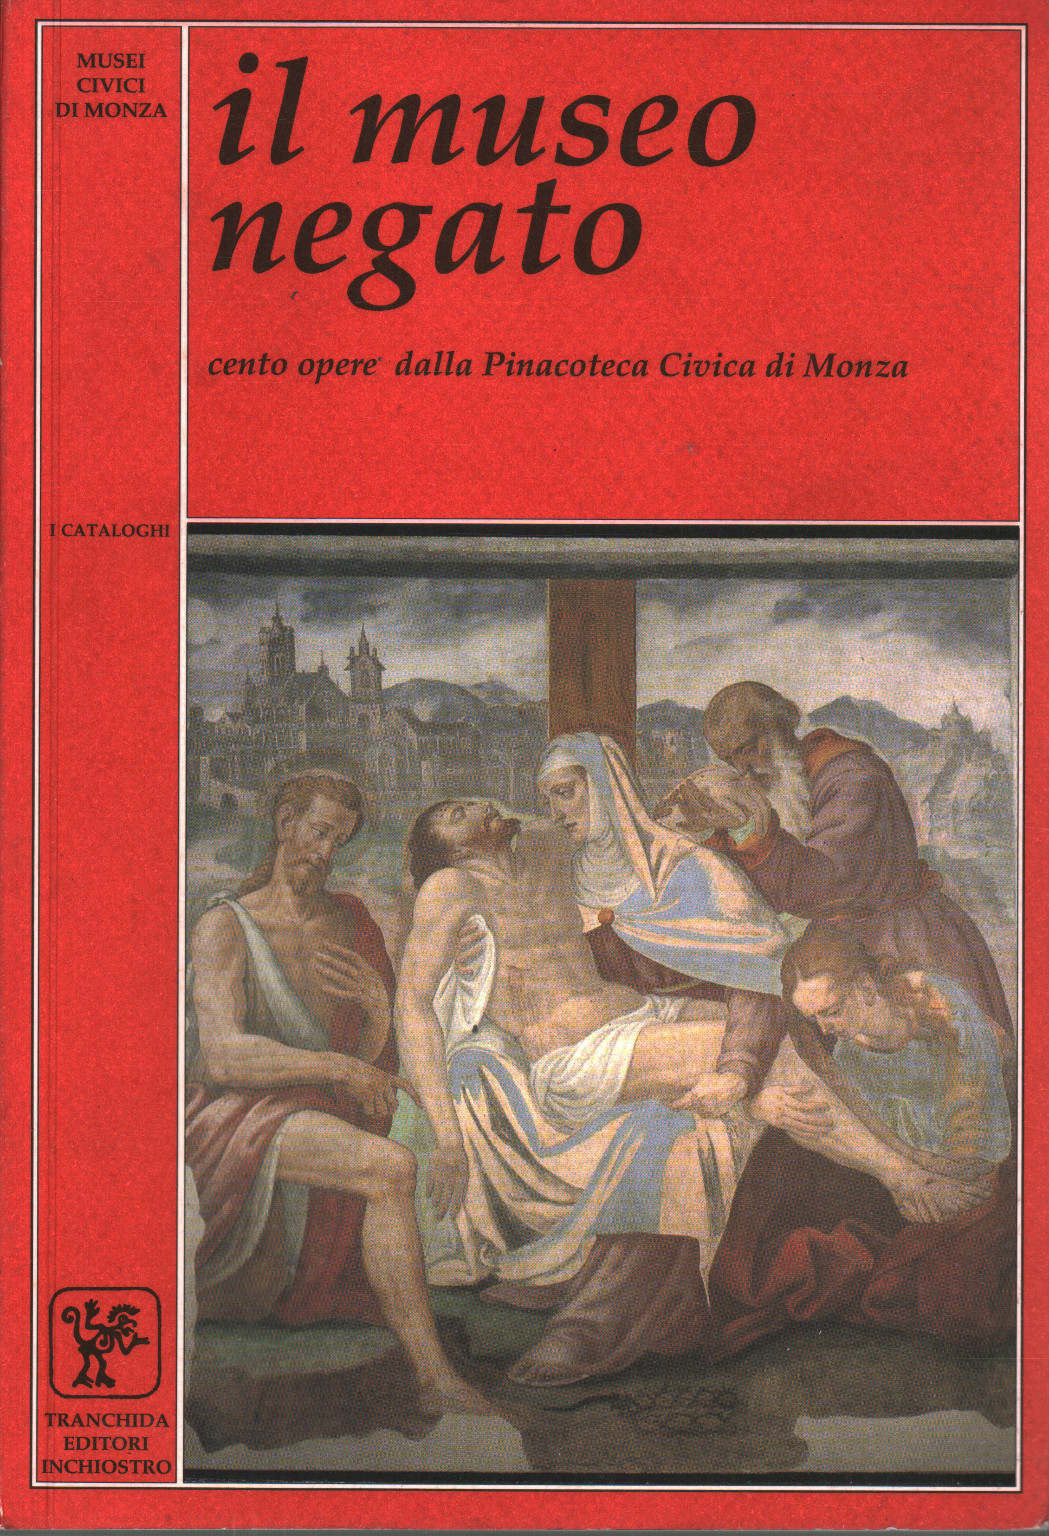 Il Museo Negato: Cento opere dalla Pinacoteca Civi, s.a.